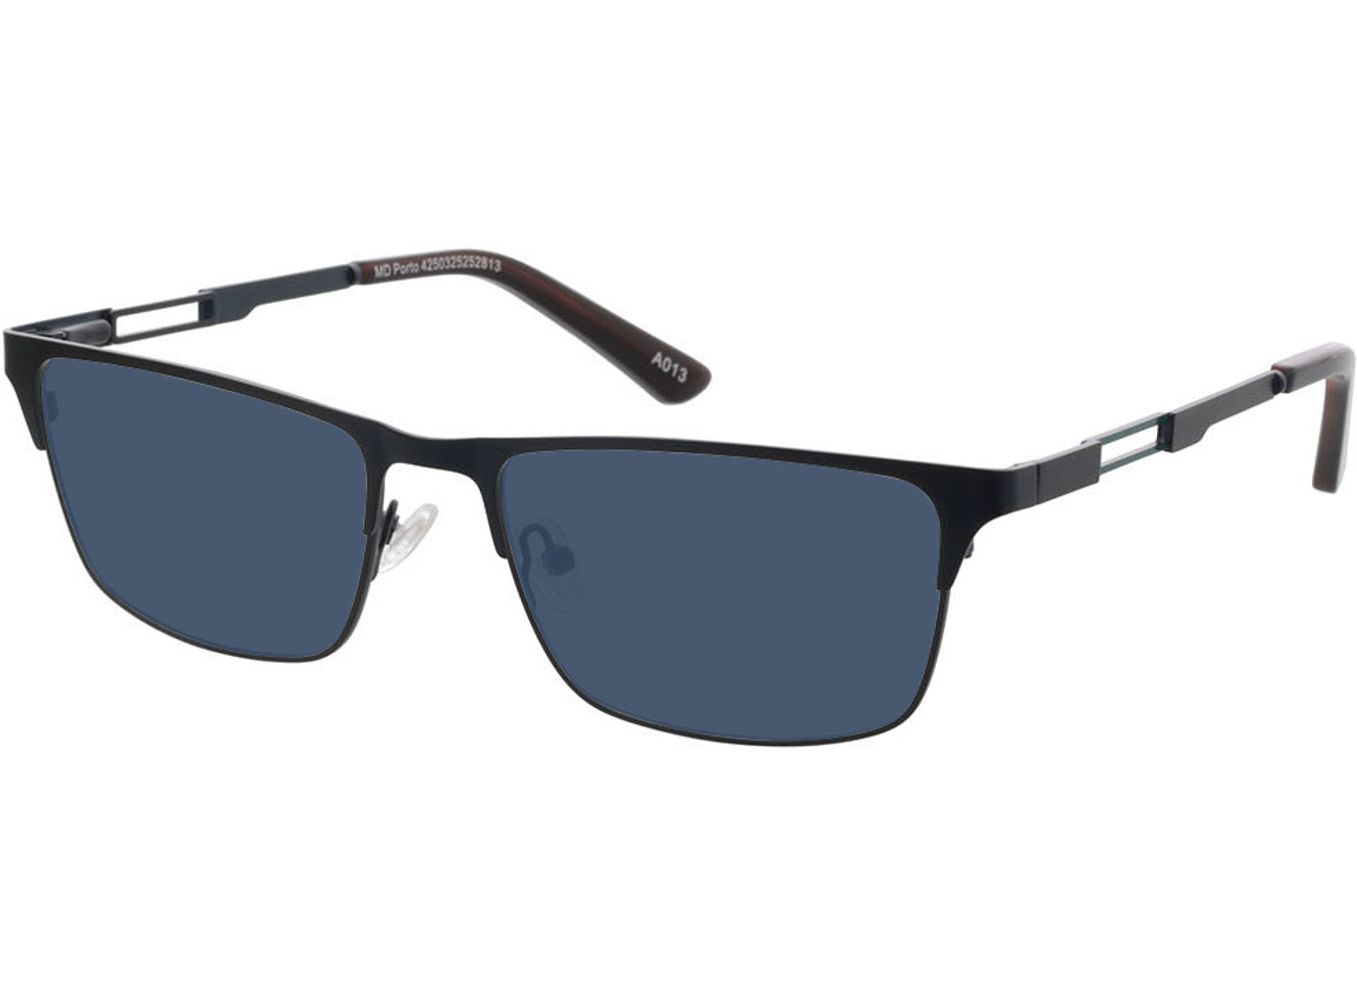 Porto - blau Sonnenbrille ohne Sehstärke, Vollrand, Rechteckig von Brille24 Collection